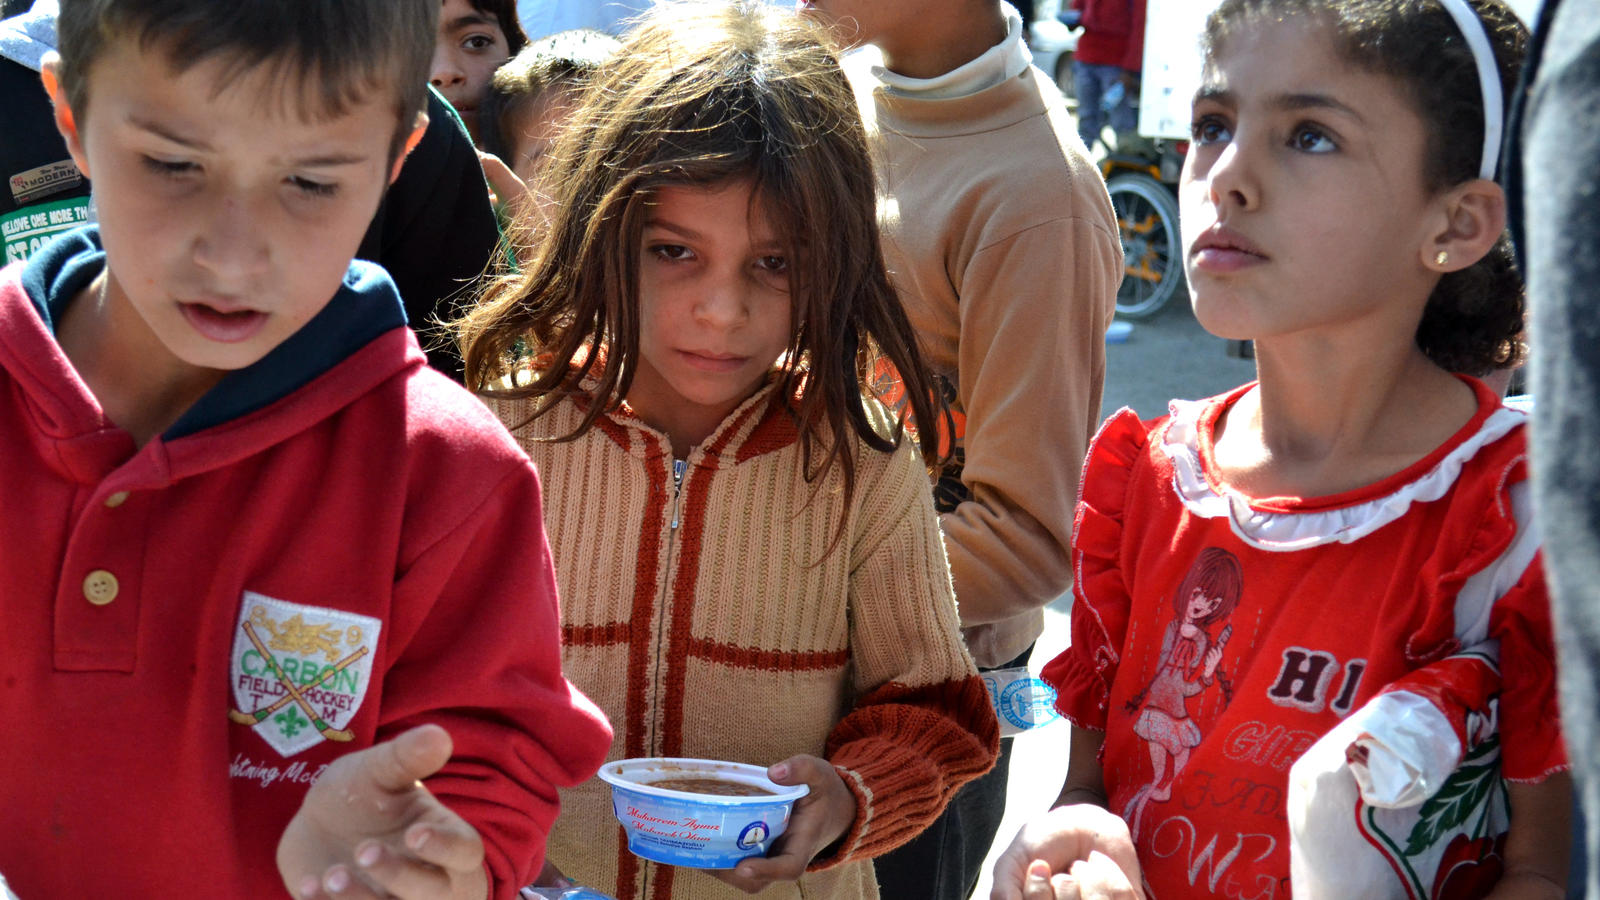 Syrische Kinder warten am 19.10.2016 in Dscharablus, Syrien, auf Essen von türkischen Hilfsorganisationen. Die Stadt wurde von syrischen Rebellensoldaten vom IS zurück erobert.    Foto: Shabtai Gold/dpa (zu dpa: "Das Leben nach der IS-Herrschaft - Rü